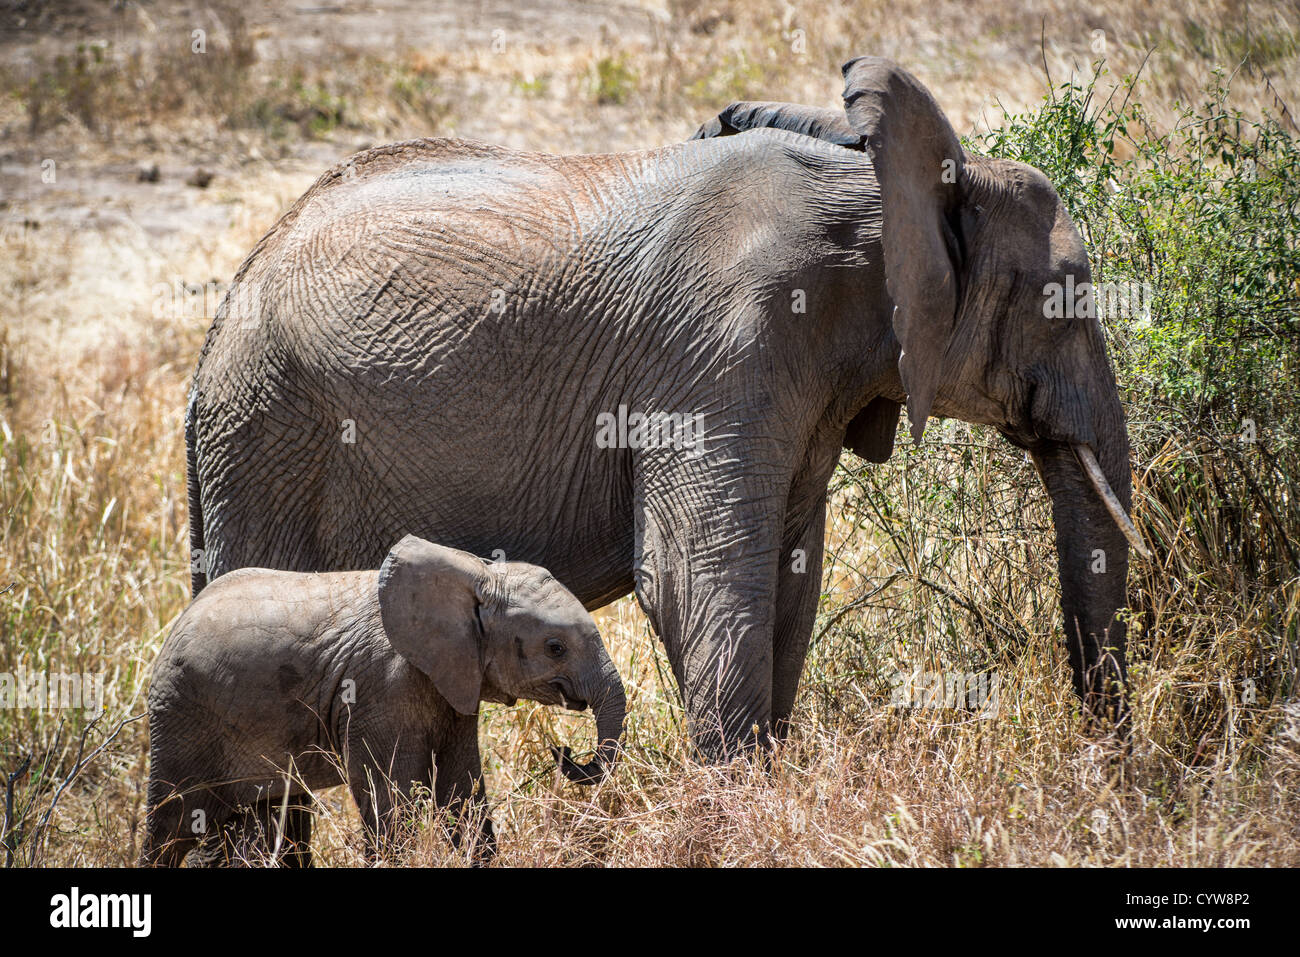 TARANGIRE-NATIONALPARK, Tansania - Ein Baby-Elefant mit seiner Mutter im Tarangire-Nationalpark im Norden Tansanias, nicht weit vom Ngorongoro-Krater und der Serengeti entfernt. Der Ngorongoro-Krater, der zum UNESCO-Weltkulturerbe gehört, ist ein riesiger vulkanischer Krater im Norden Tansanias. Sie wurde vor 2-3 Millionen Jahren gegründet, hat einen Durchmesser von etwa 20 Kilometern und ist die Heimat vielfältiger Tiere, einschließlich der „Big Five“-Wildtiere. Das Ngorongoro Conservation Area, bewohnt von den Maasai, enthält auch bedeutende archäologische Stätten wie die Olduvai-Schlucht und Laetoli, die Einblicke in die frühe menschliche Ev bieten Stockfoto